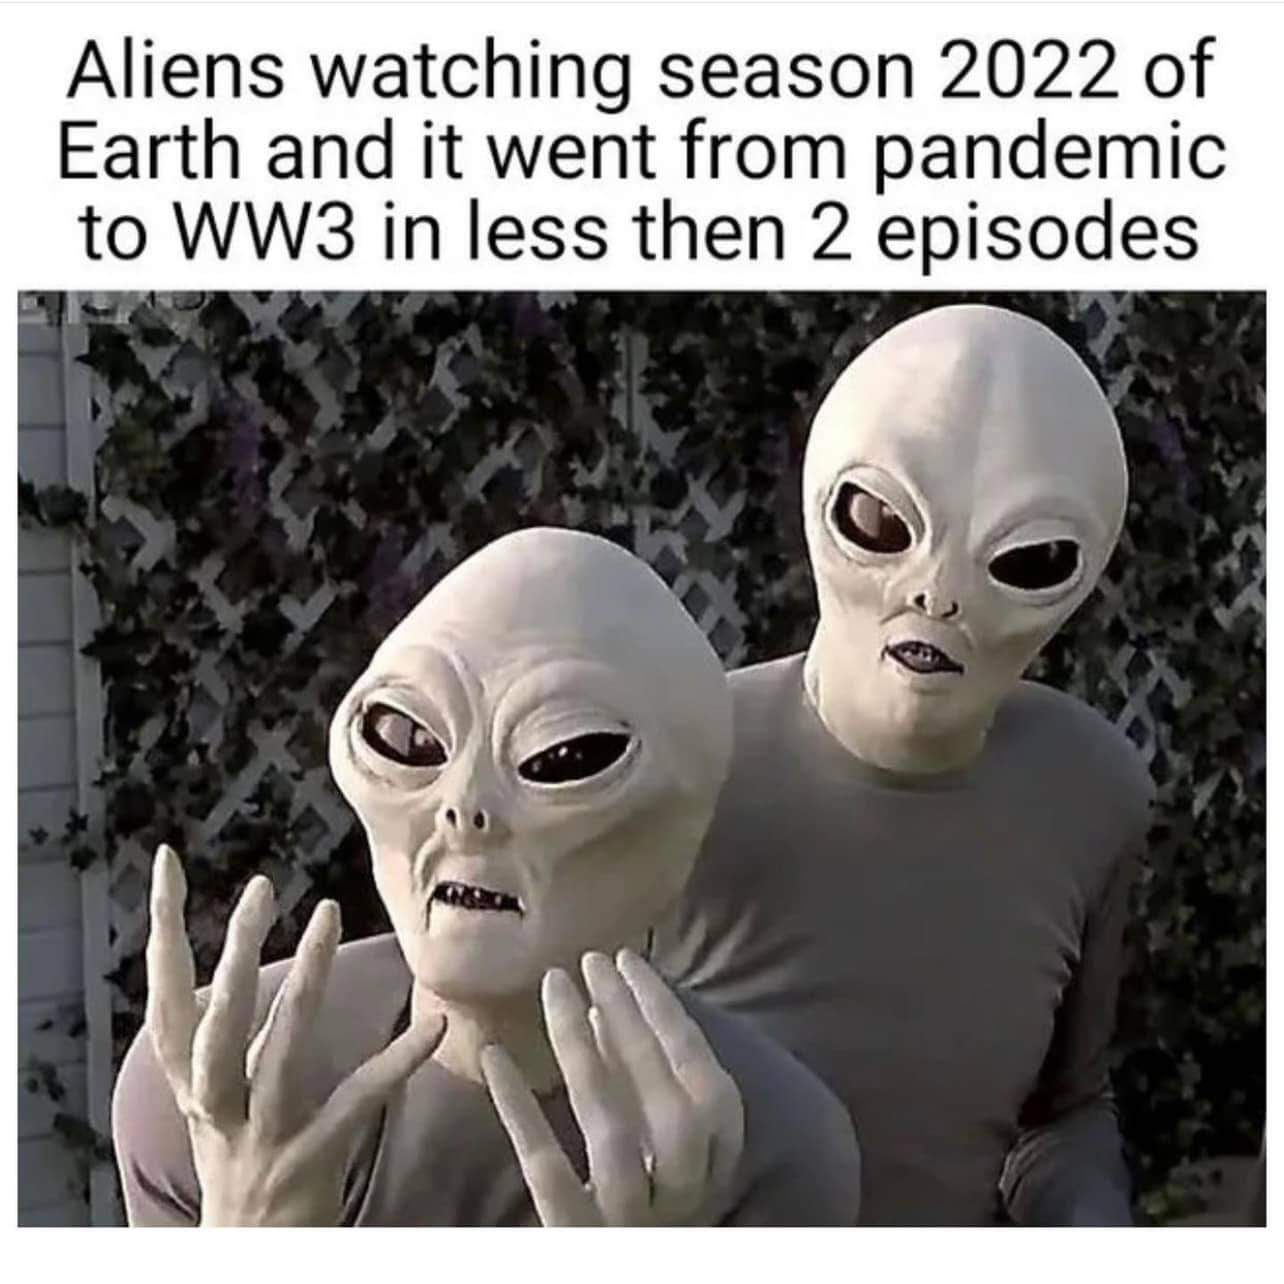 aliens_watching_season_2022.jpg